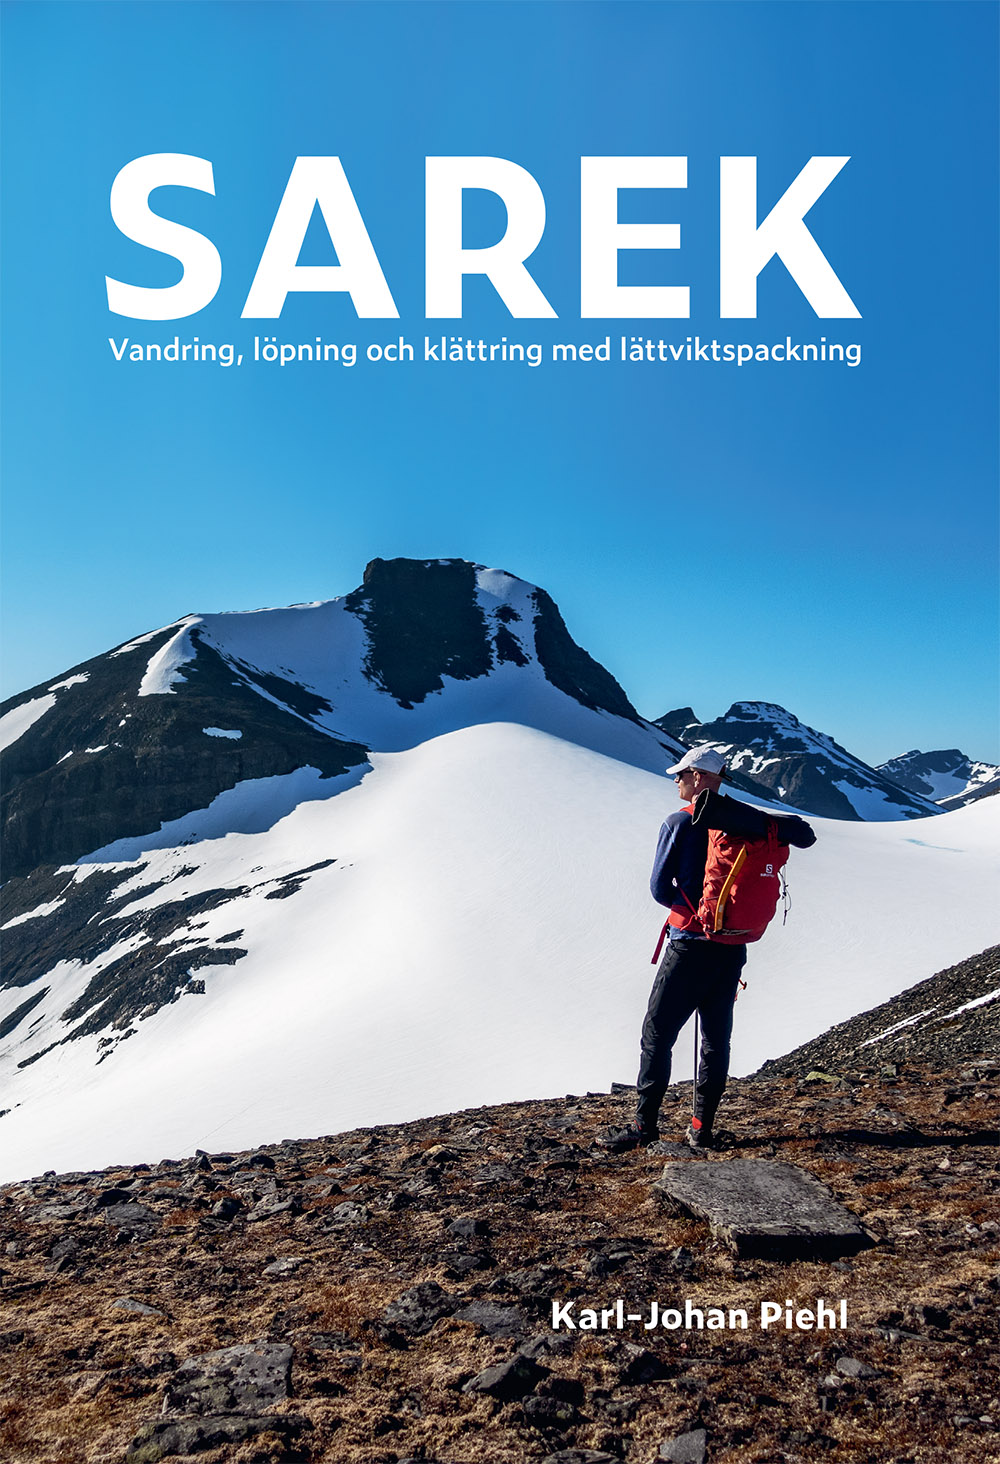 Sarek: Vandring, löpning och klättring med lättviktspackning